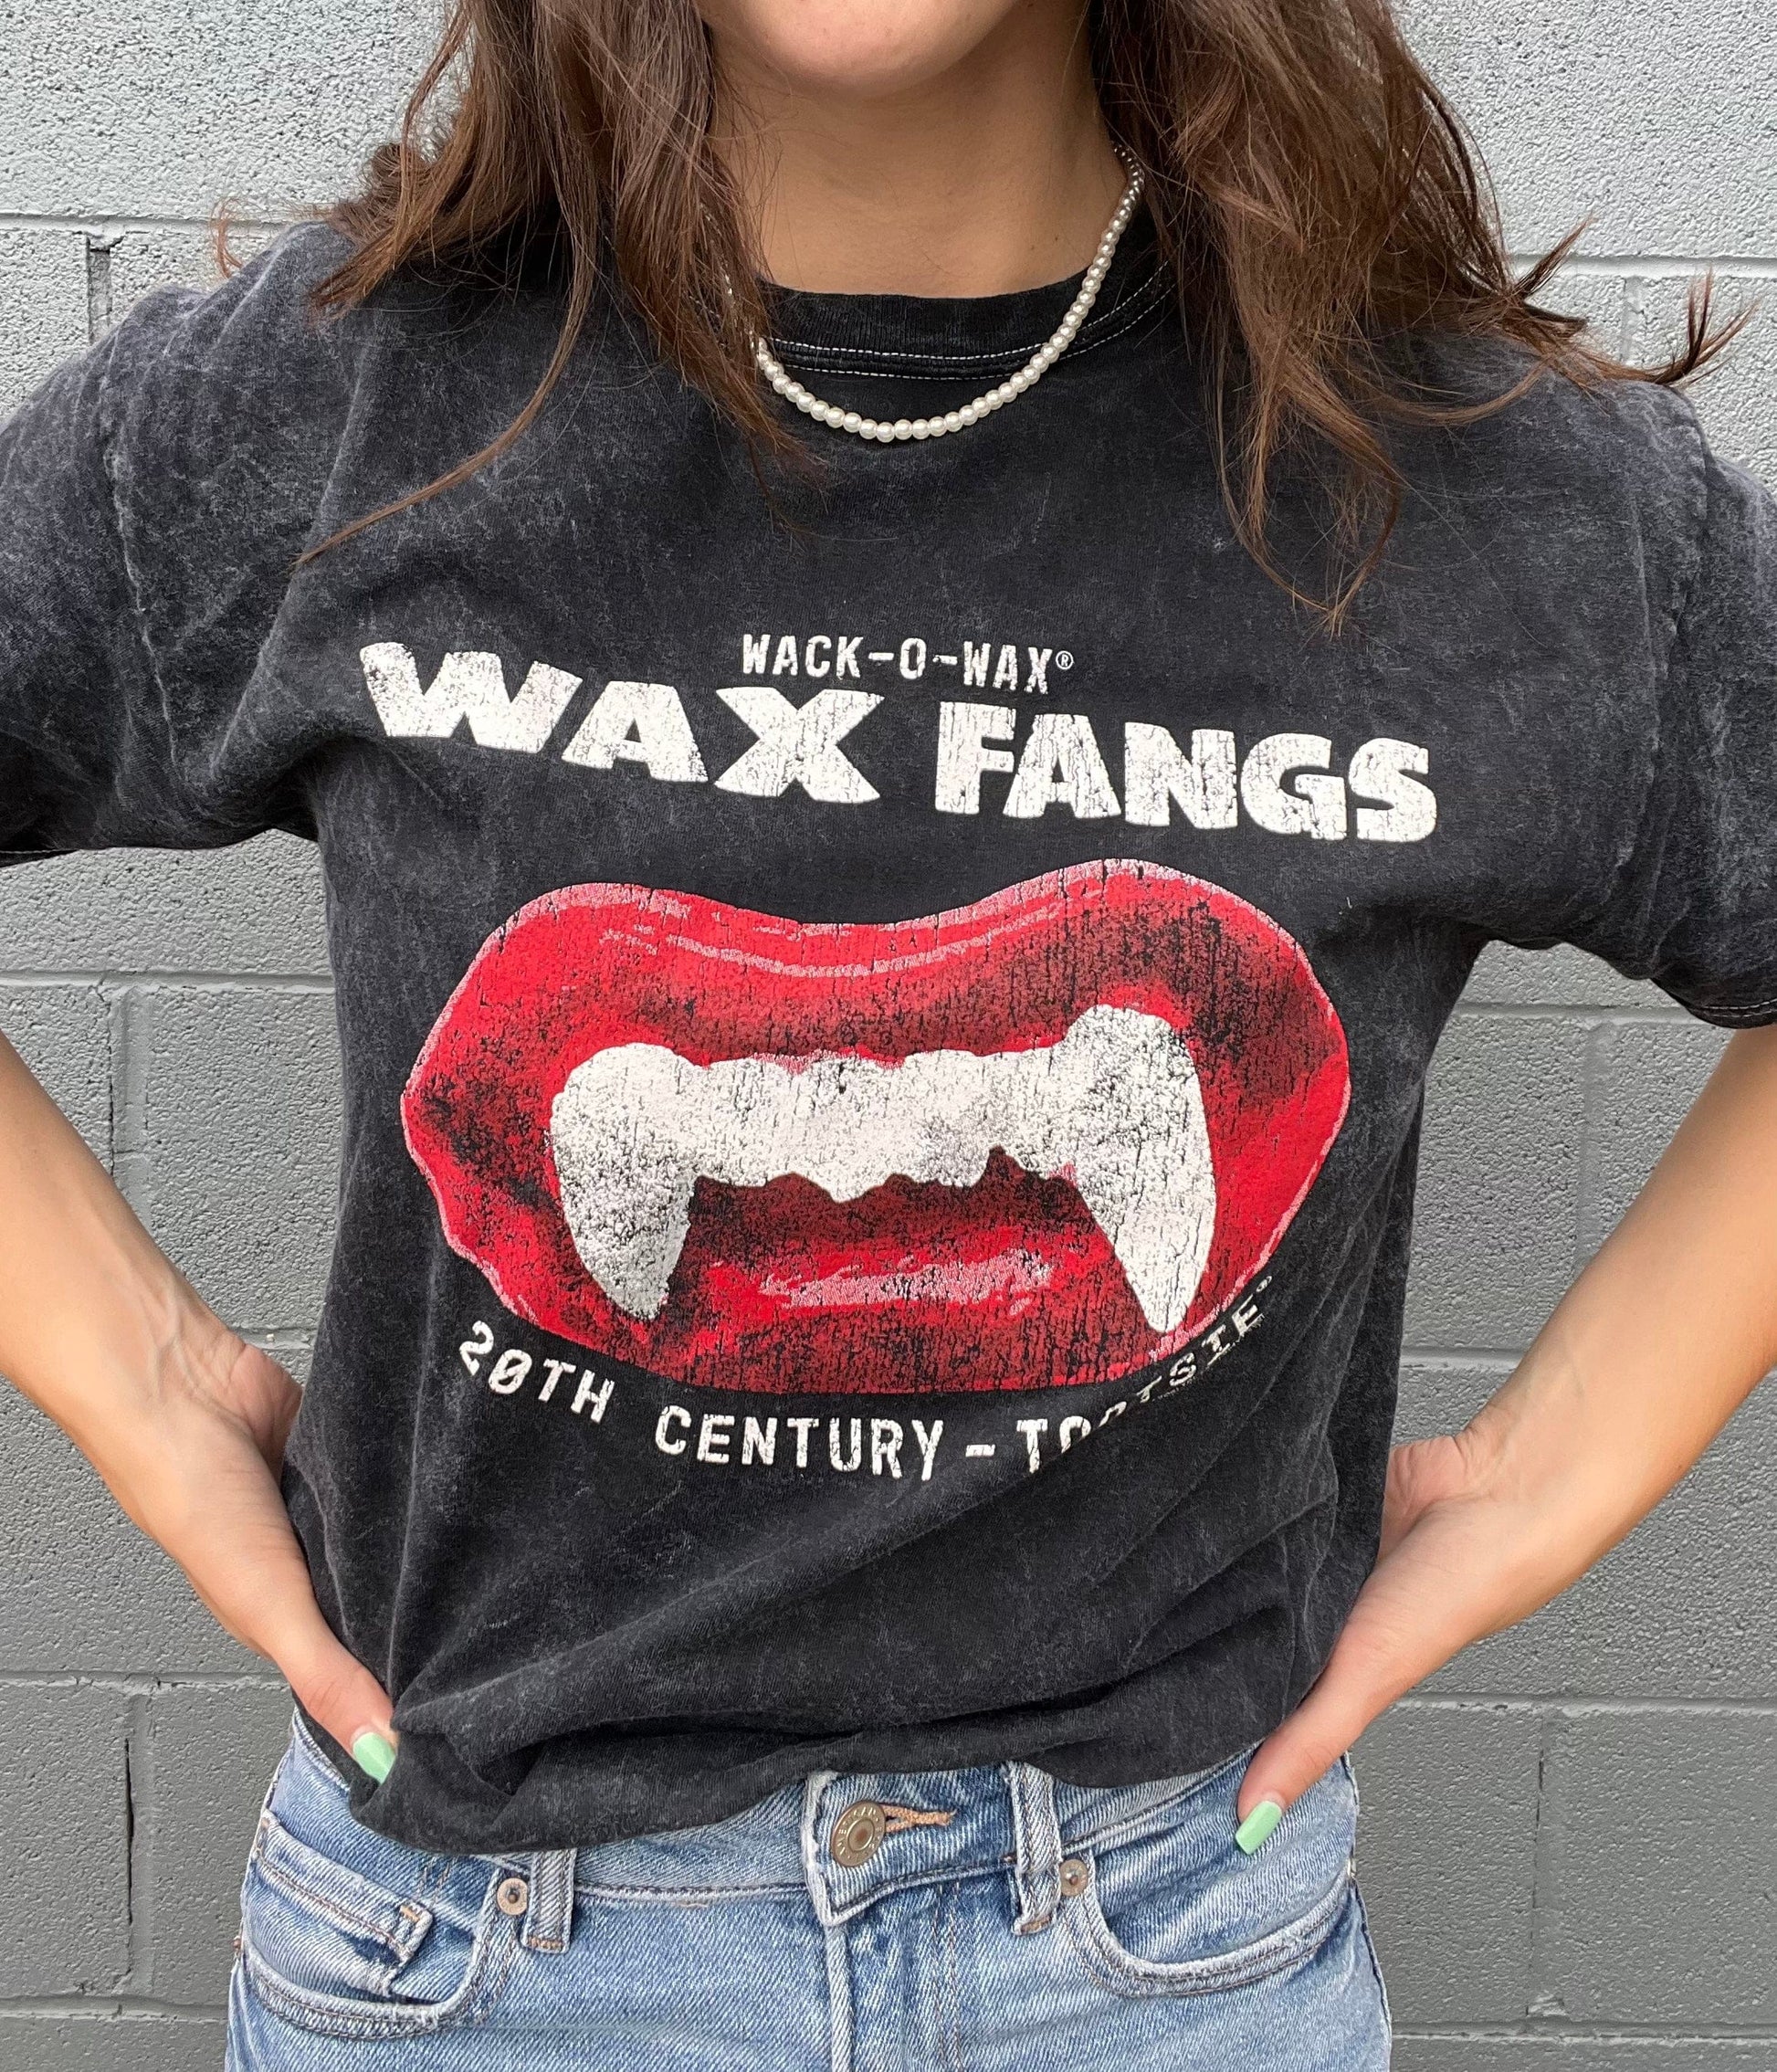 Wack-O-Wax, Wax Lips - .5oz – Sweet Memories Vintage Tees & Candy